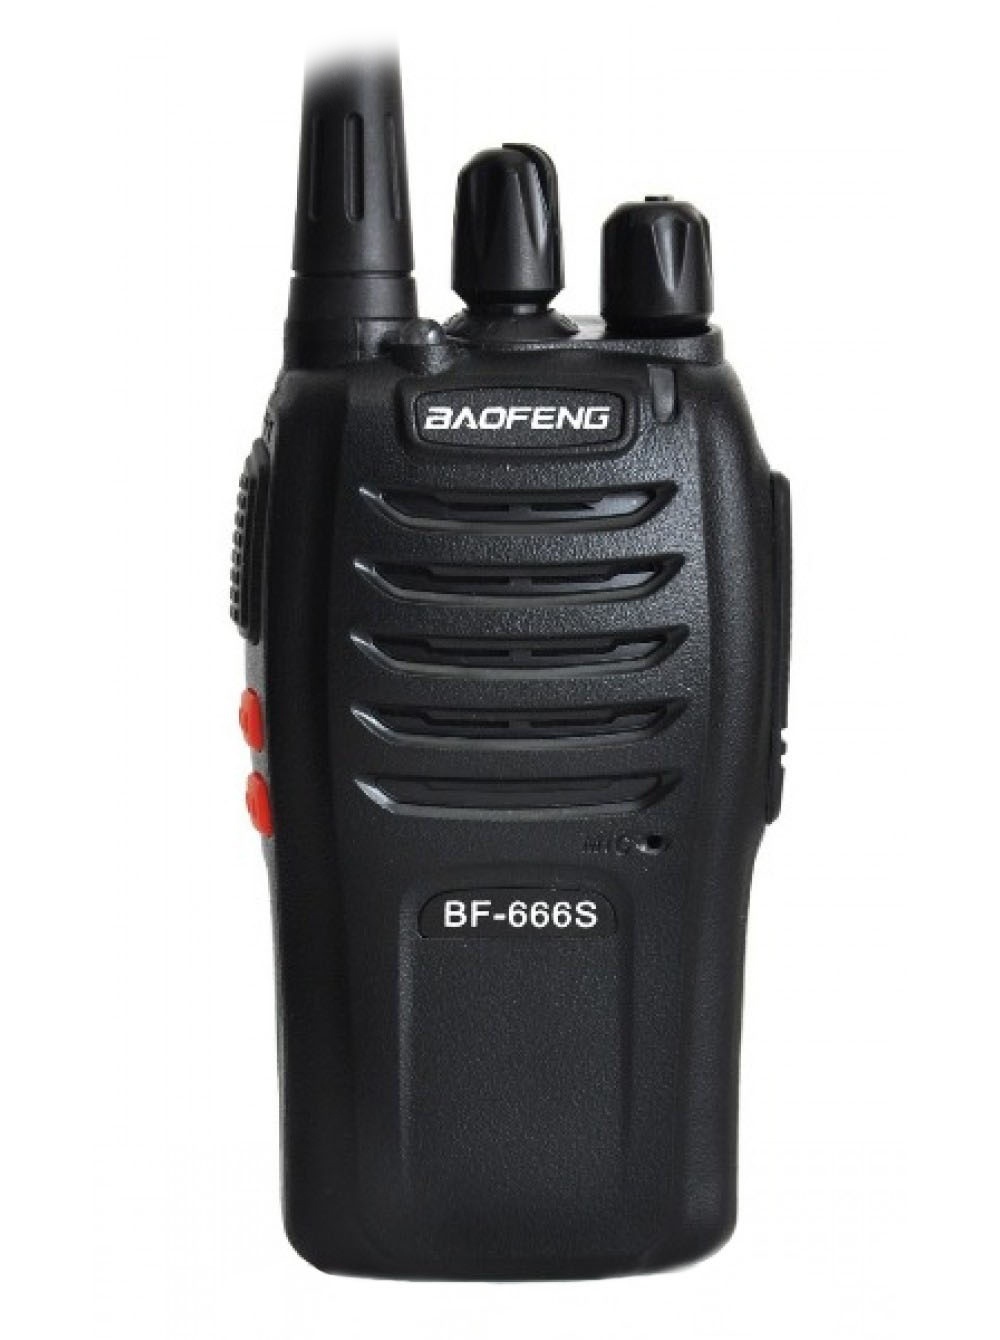 Рация Baofeng BF-666S risenke earpiece for baofeng walkie talkie headset uv 5r bf 888s bf 777s bf 666s uv 82 uv s9 uv5ra uv5re kg uv8d uv6d